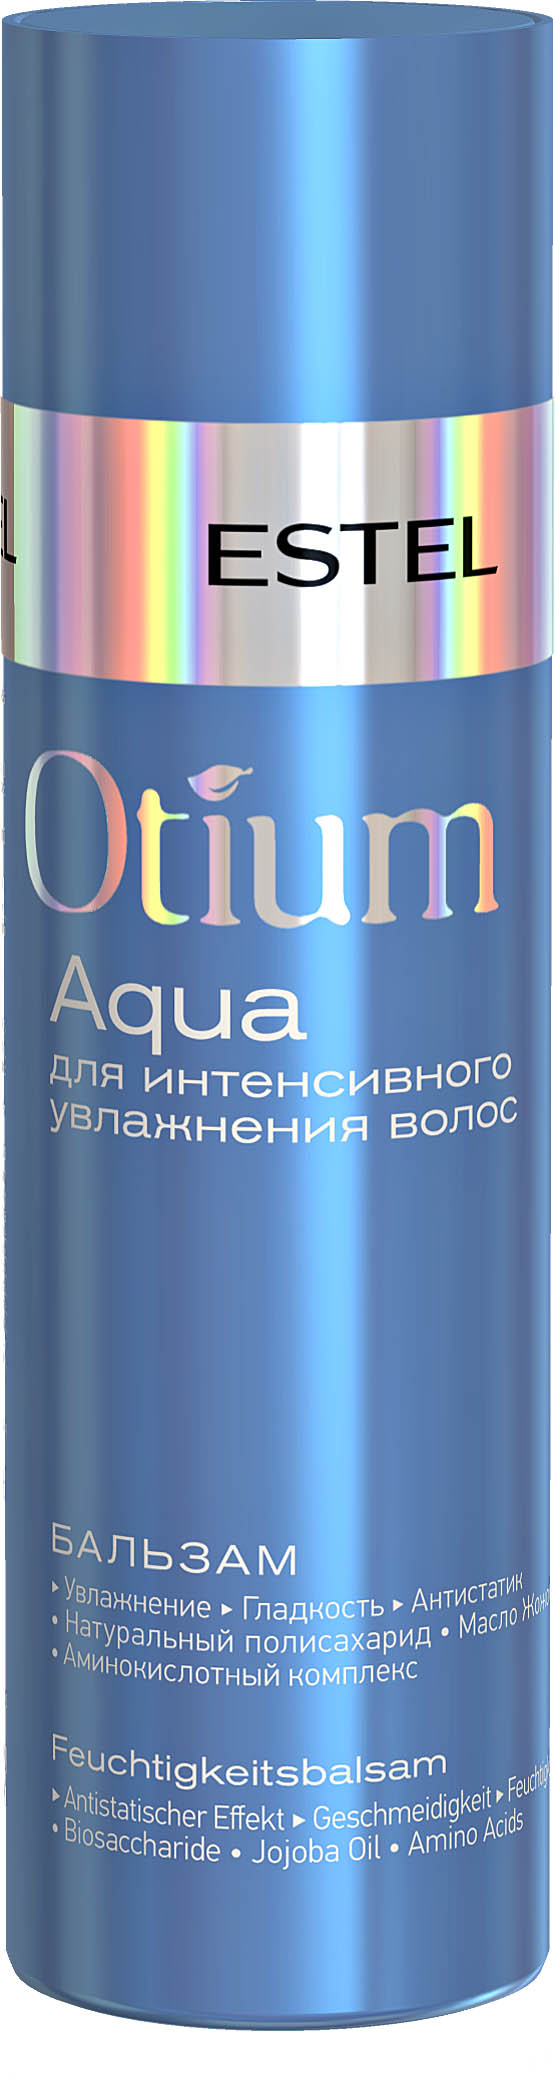 Бальзам для интенсивного увлажнения волос OTIUM AQUA, 200 мл OTM.36